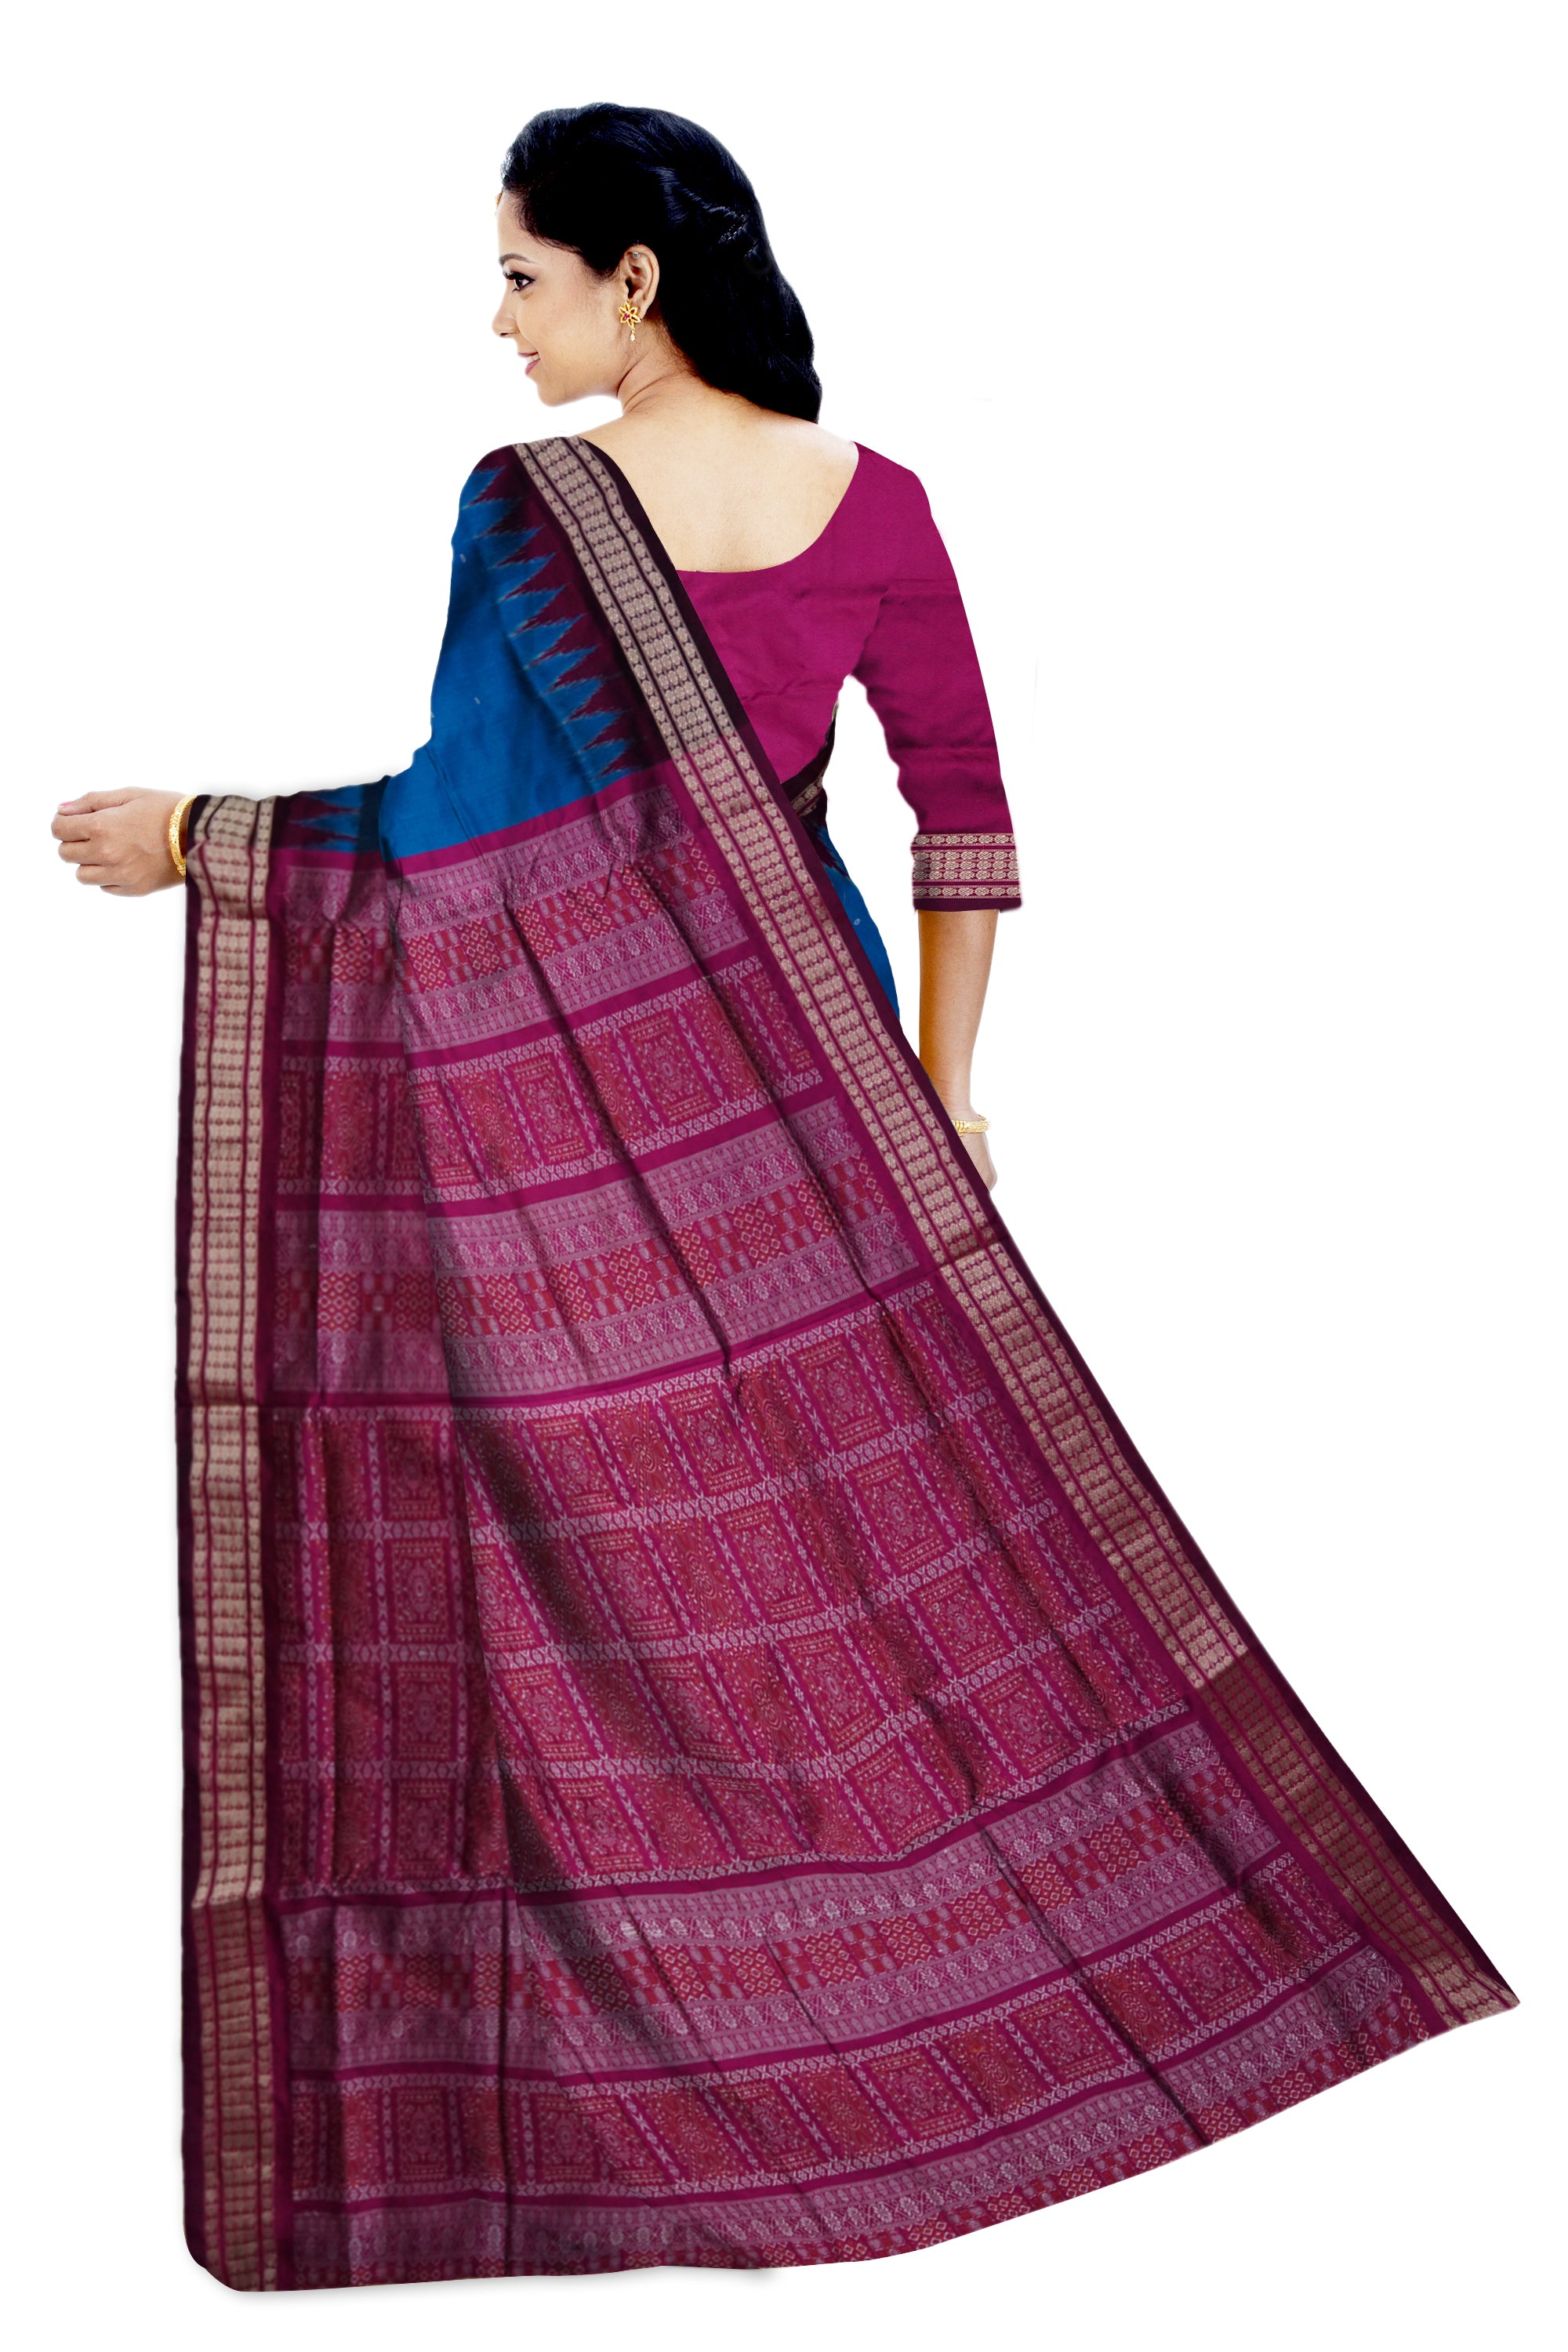 Small booty pattern body with pallu bomkei pattern Sambalpuri plain pata saree in Blue and pink color. - Koshali Arts & Crafts Enterprise